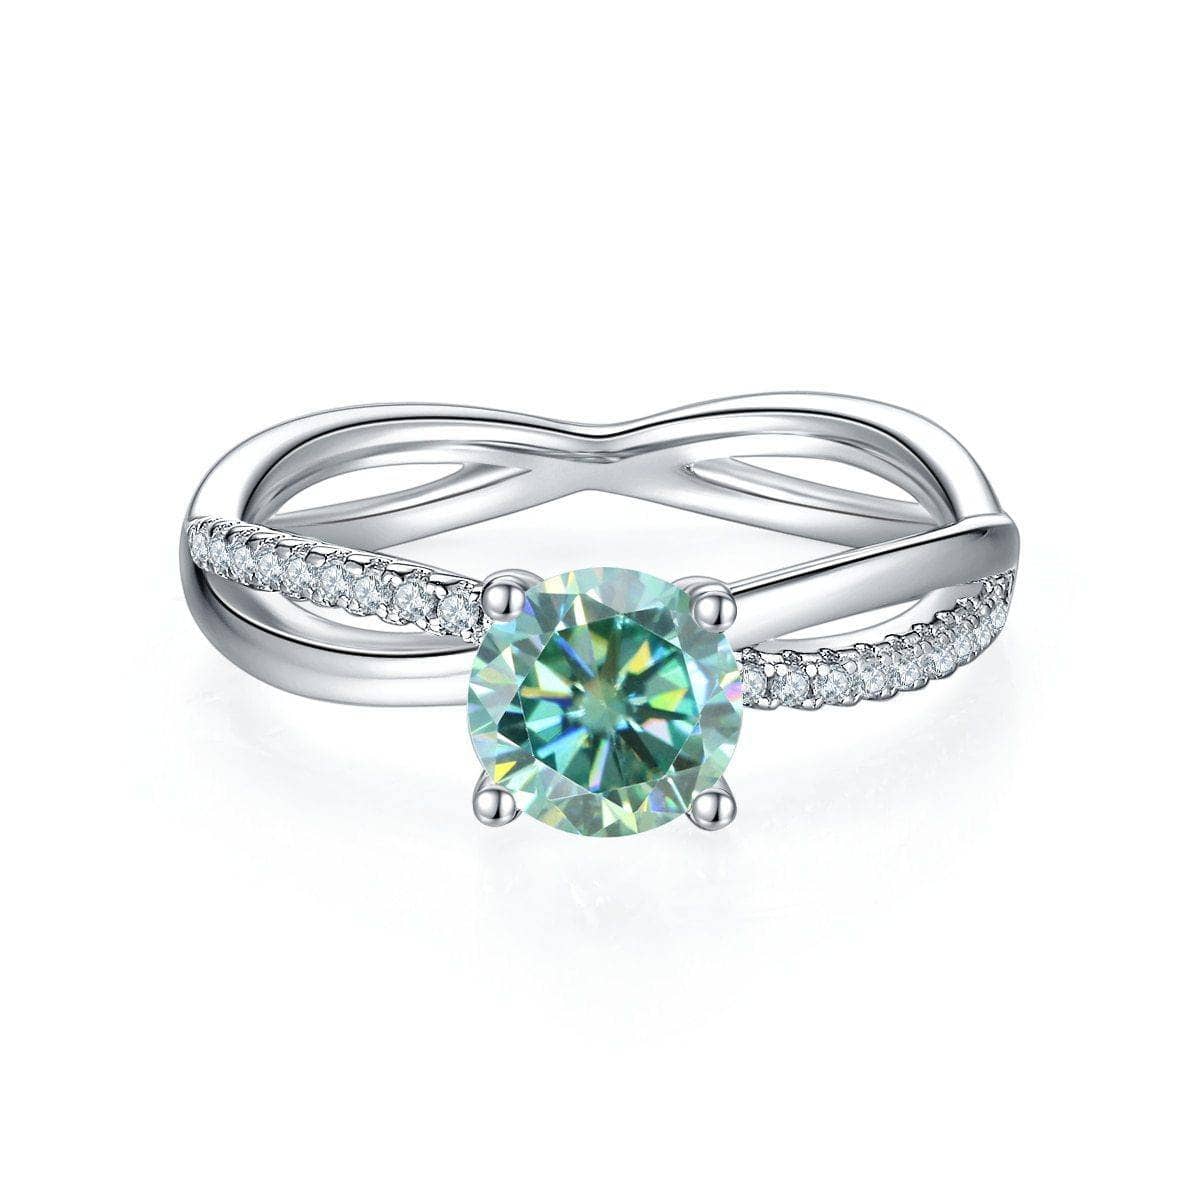 Customize Your Dream Ring- 10k White Gold+Green Moissanite-Black Diamonds New York